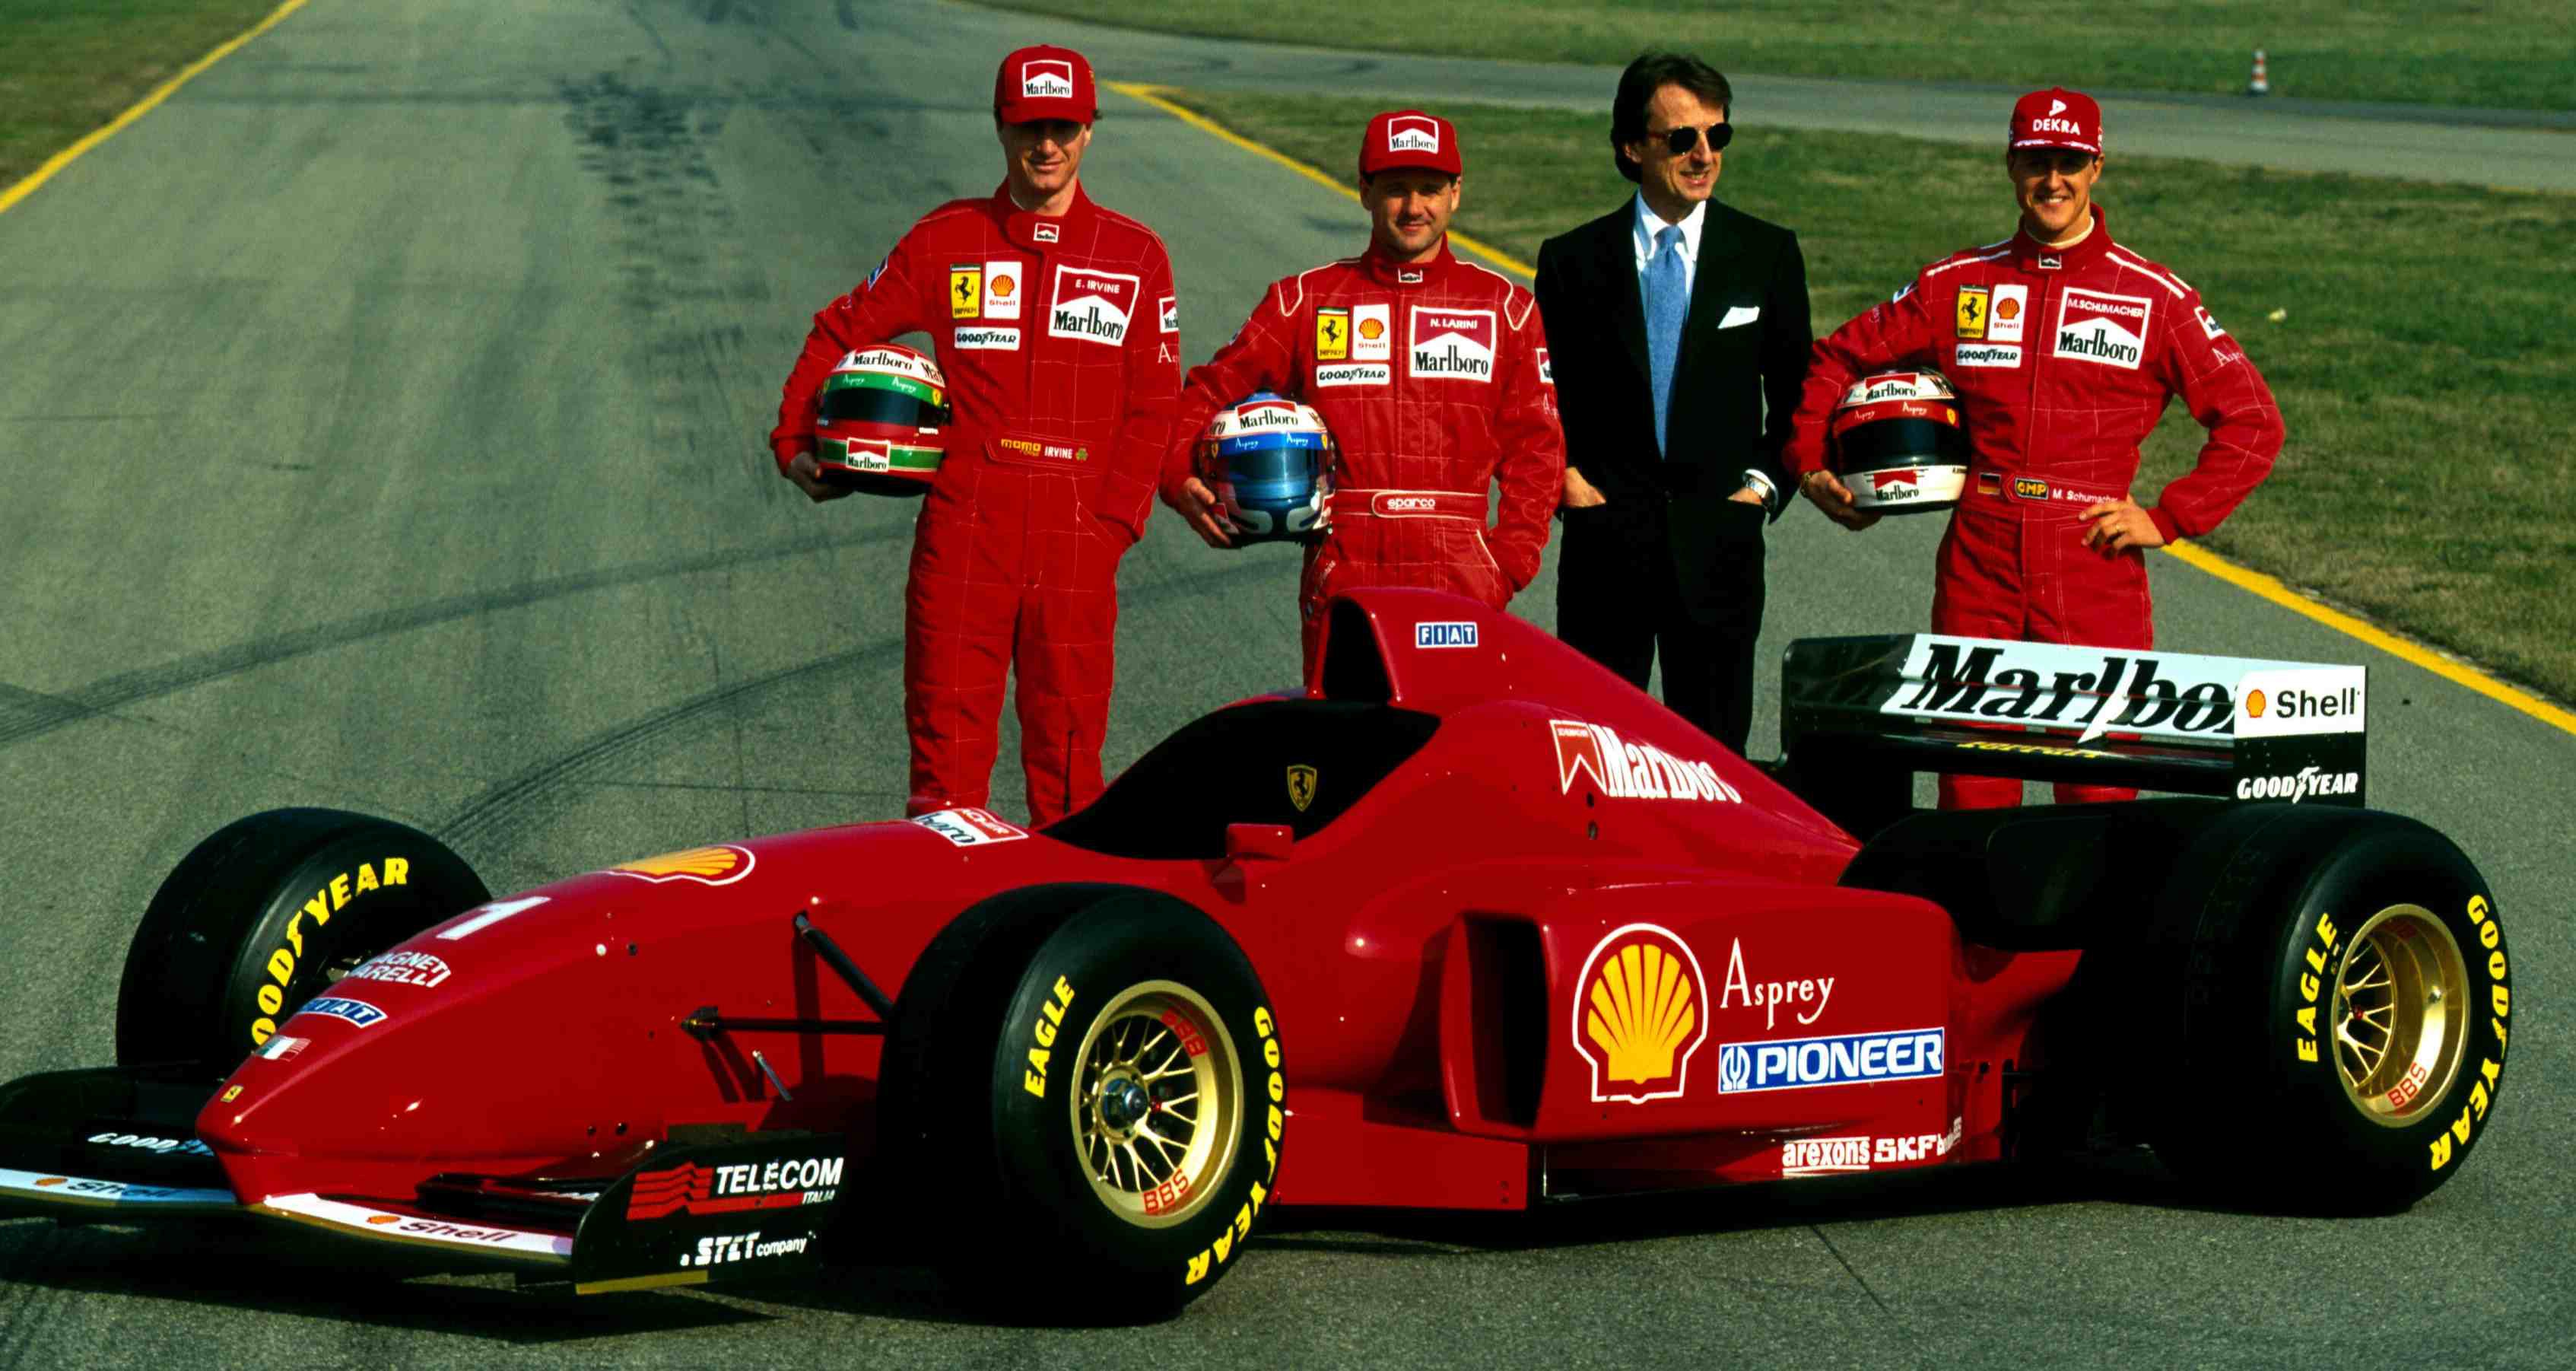 Michael Schumacher Computer Wallpaper - Michael Schumacher 1995 Ferrari -  3387x1802 Wallpaper 